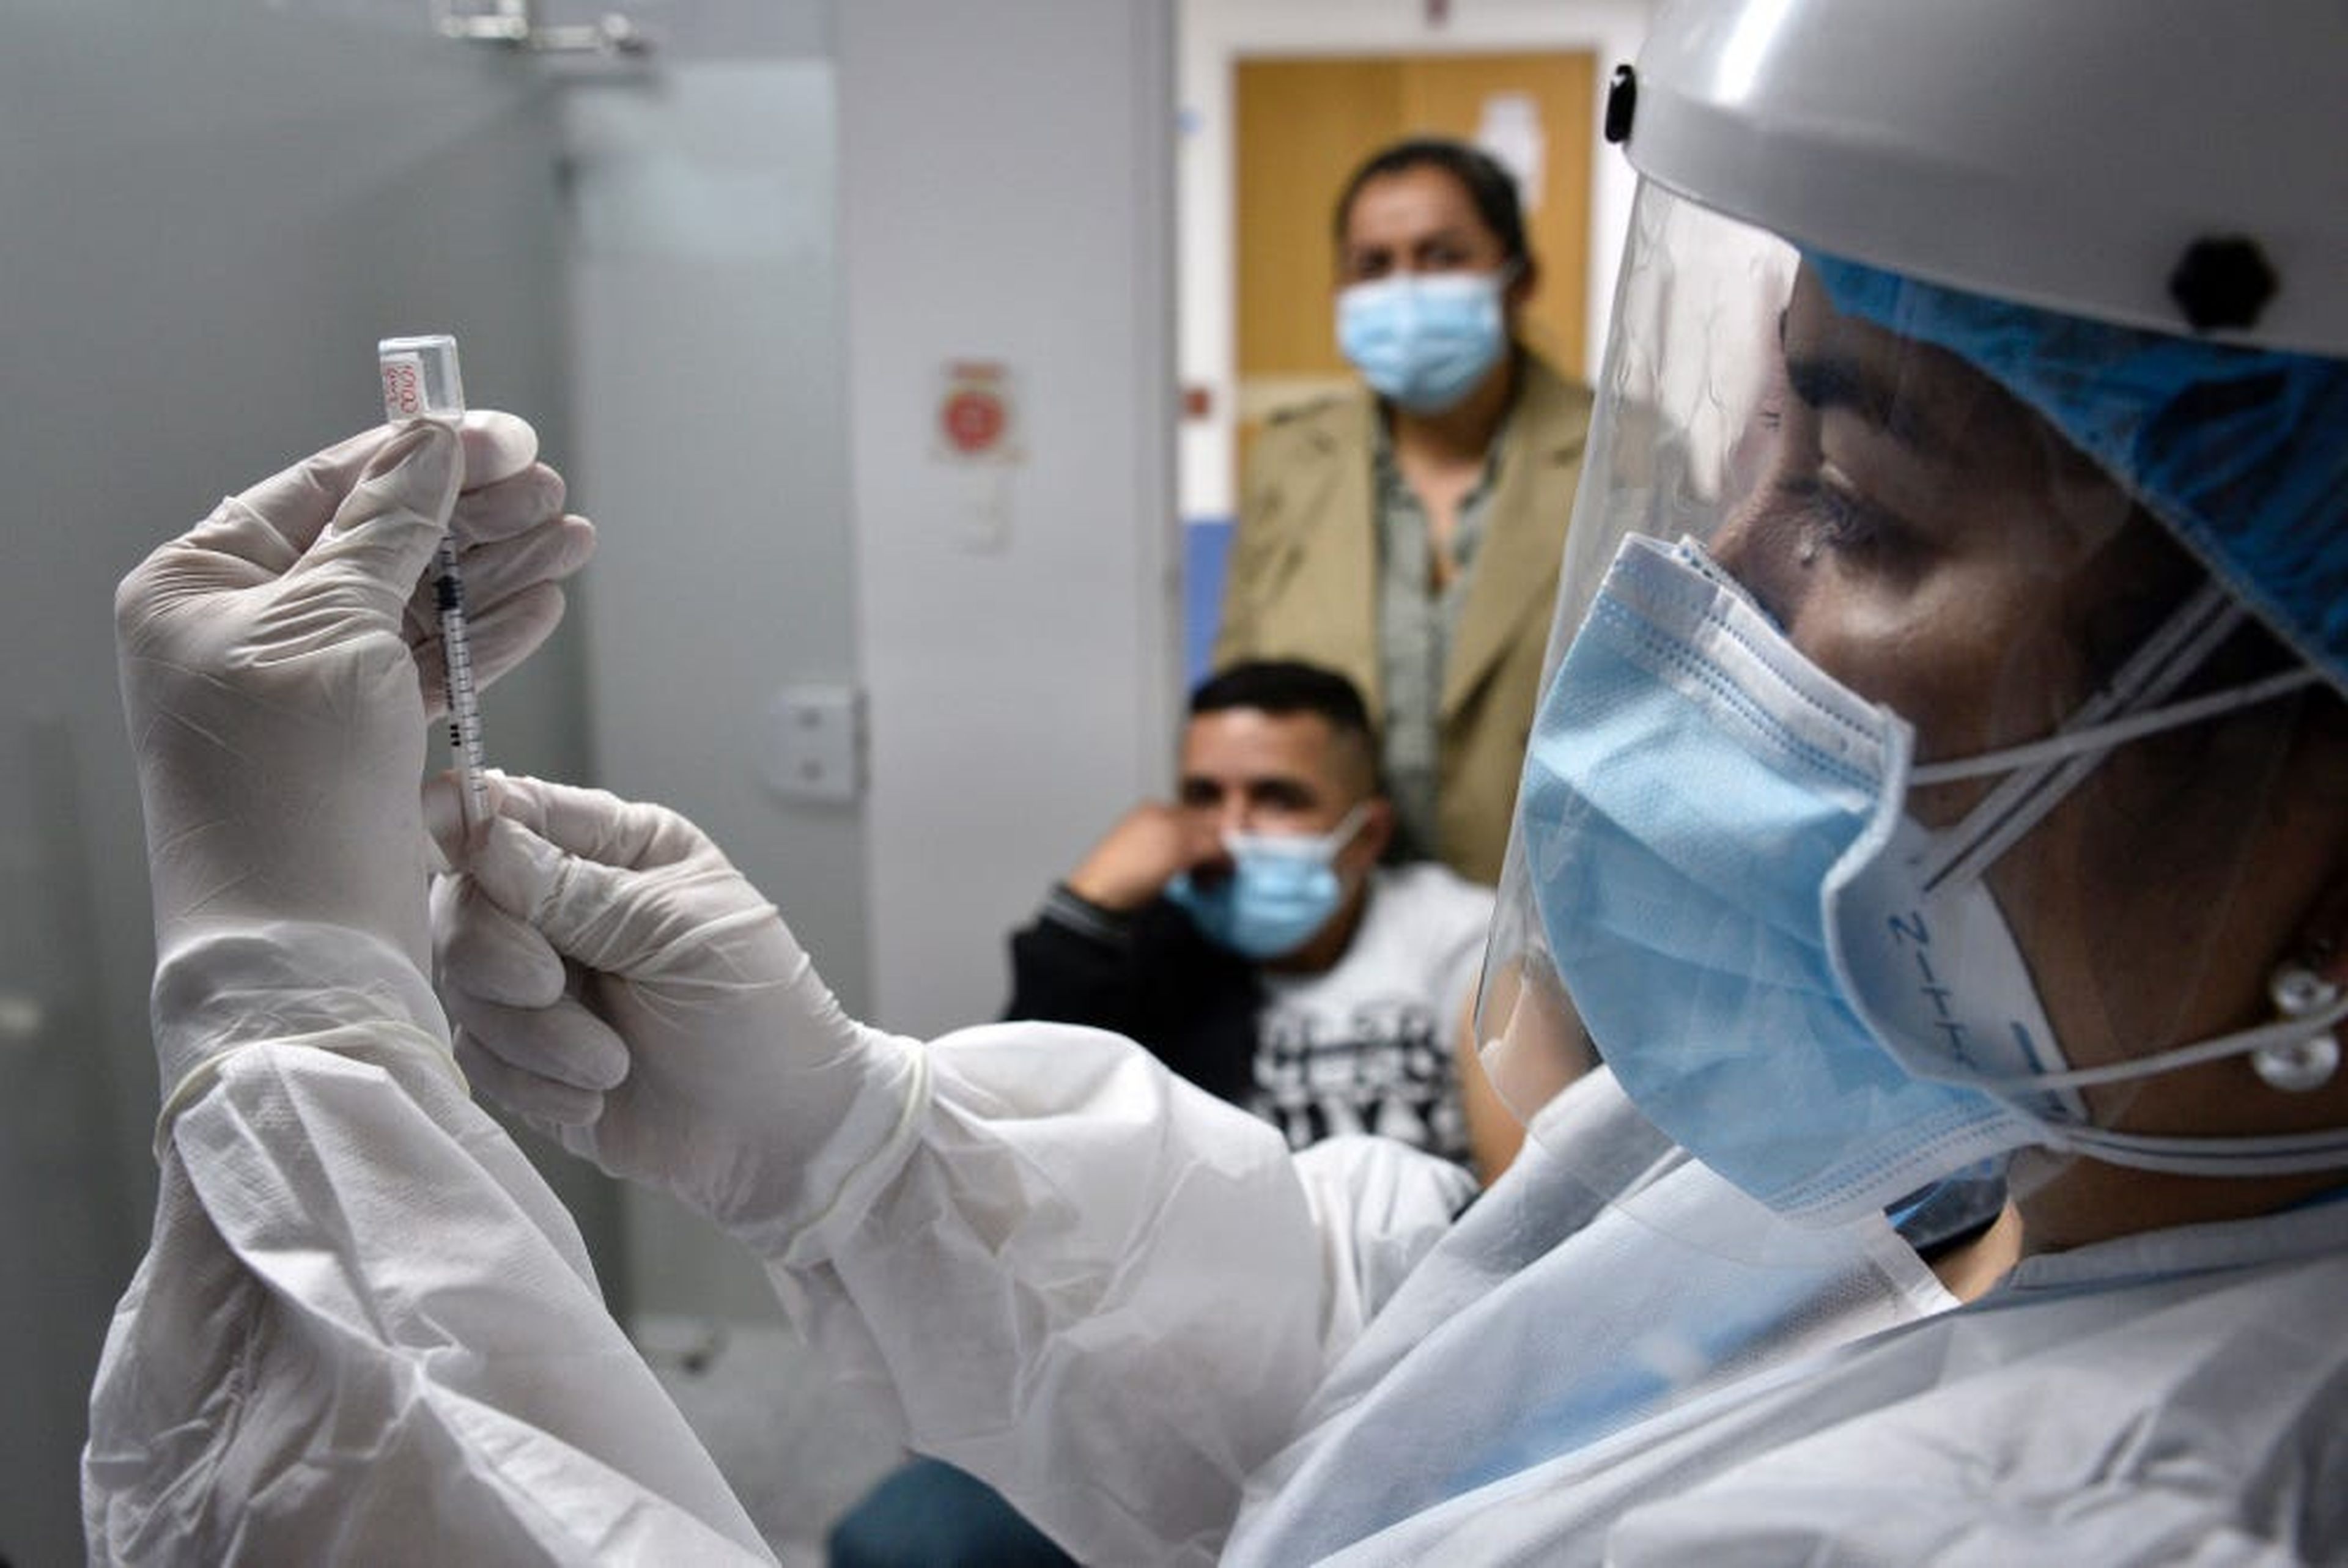 Un profesional médico prepara una jeringa antes de aplicarla al paciente durante un simulacro de vacunación en Bogotá (Colombia) en enero de 2021.